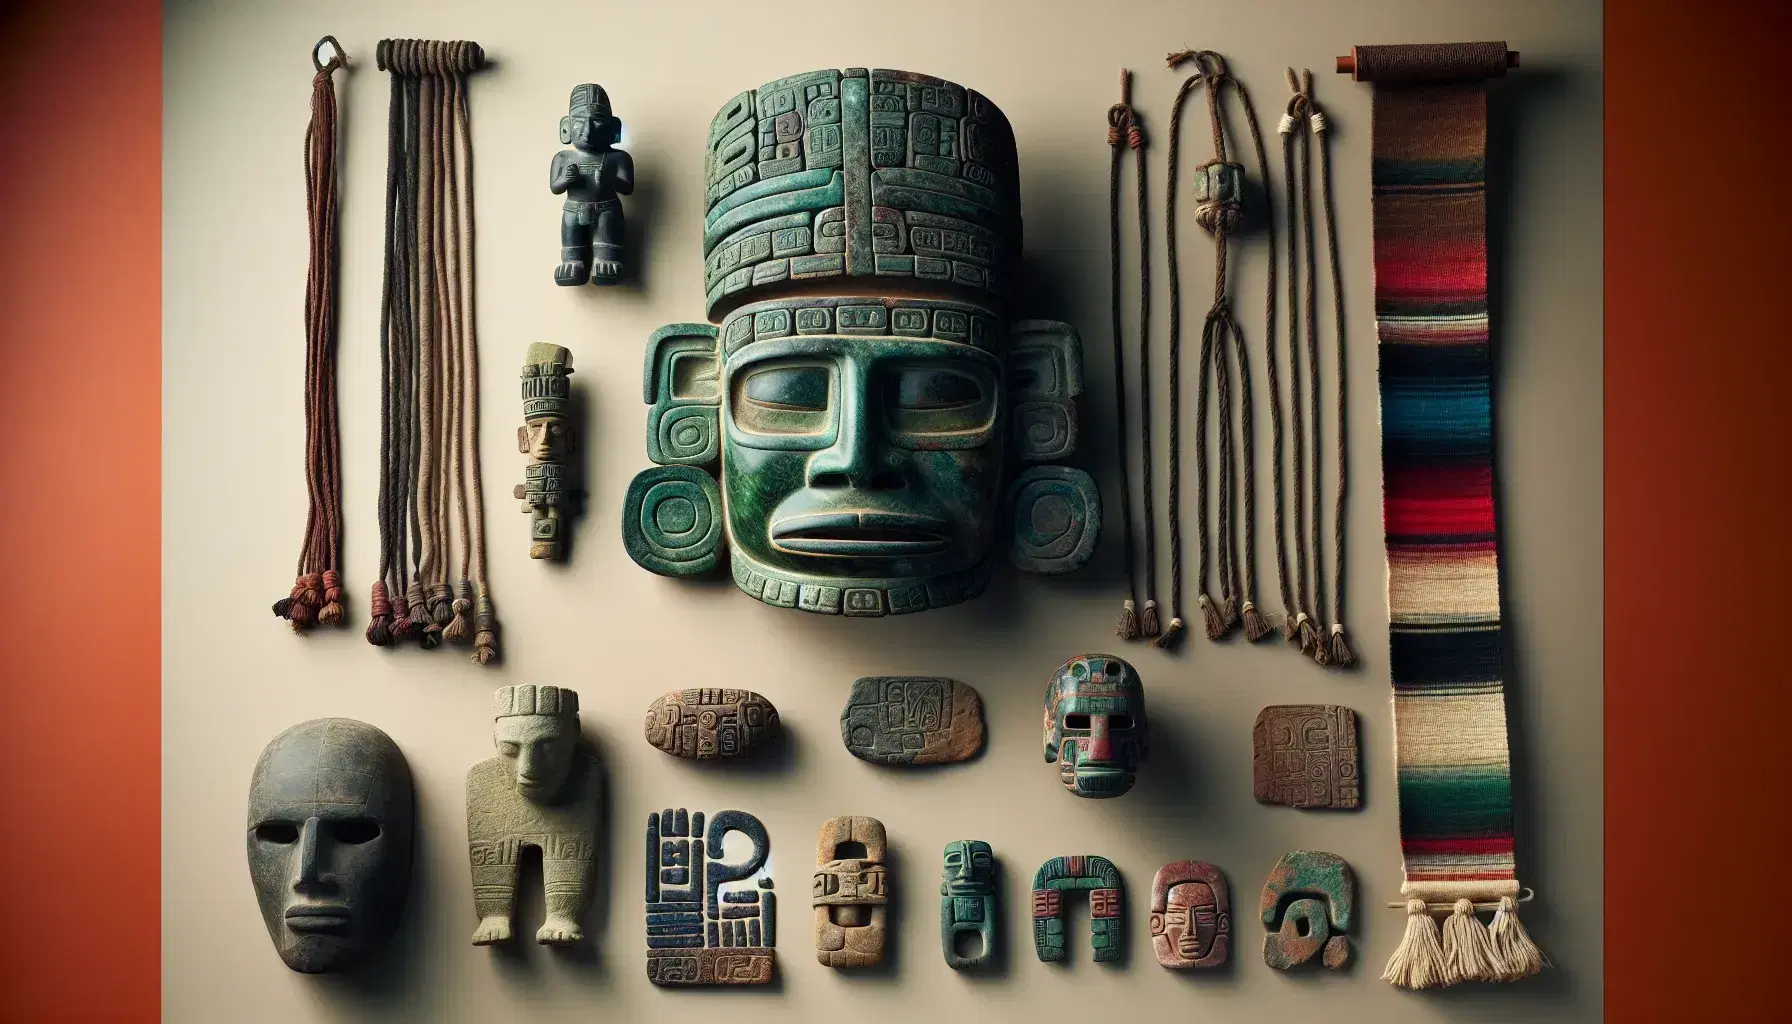 Máscara ceremonial maya de jade, estatuilla de sacerdote, fragmento de cerámica pintada, quipu inca y flauta de pan precolombina en fondo neutro.